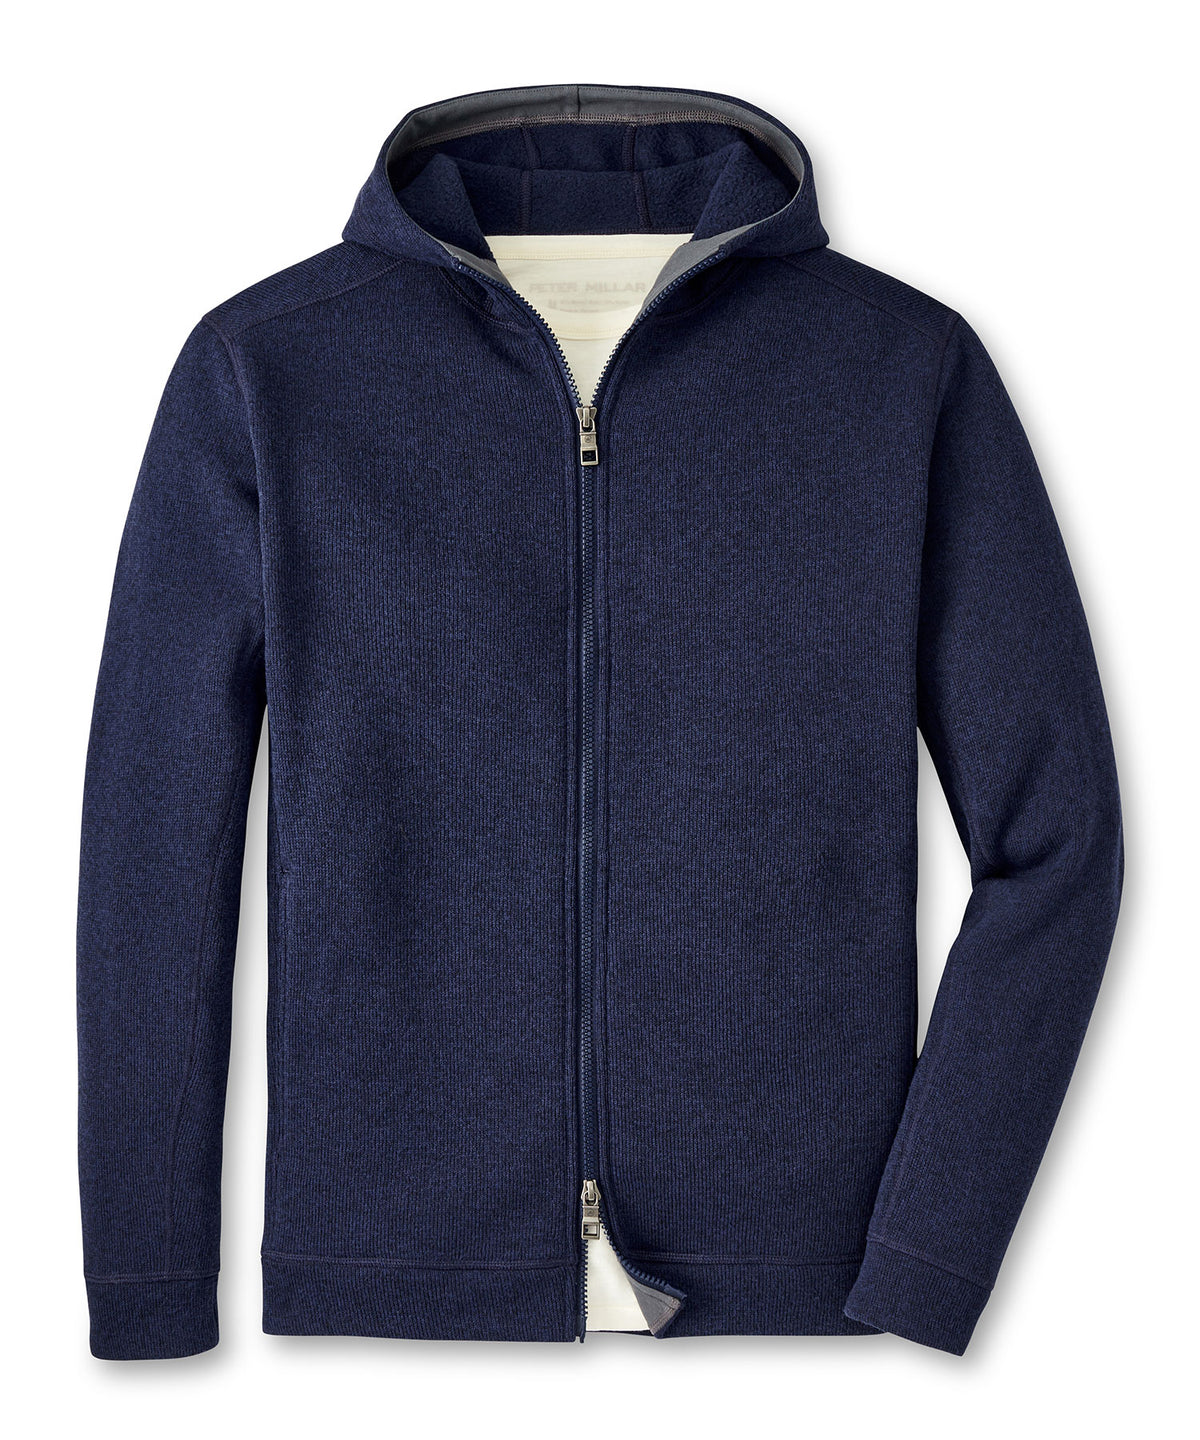 Peter Millar Sweater Fleece Full Zip Hoodie, Men's Big & Tall